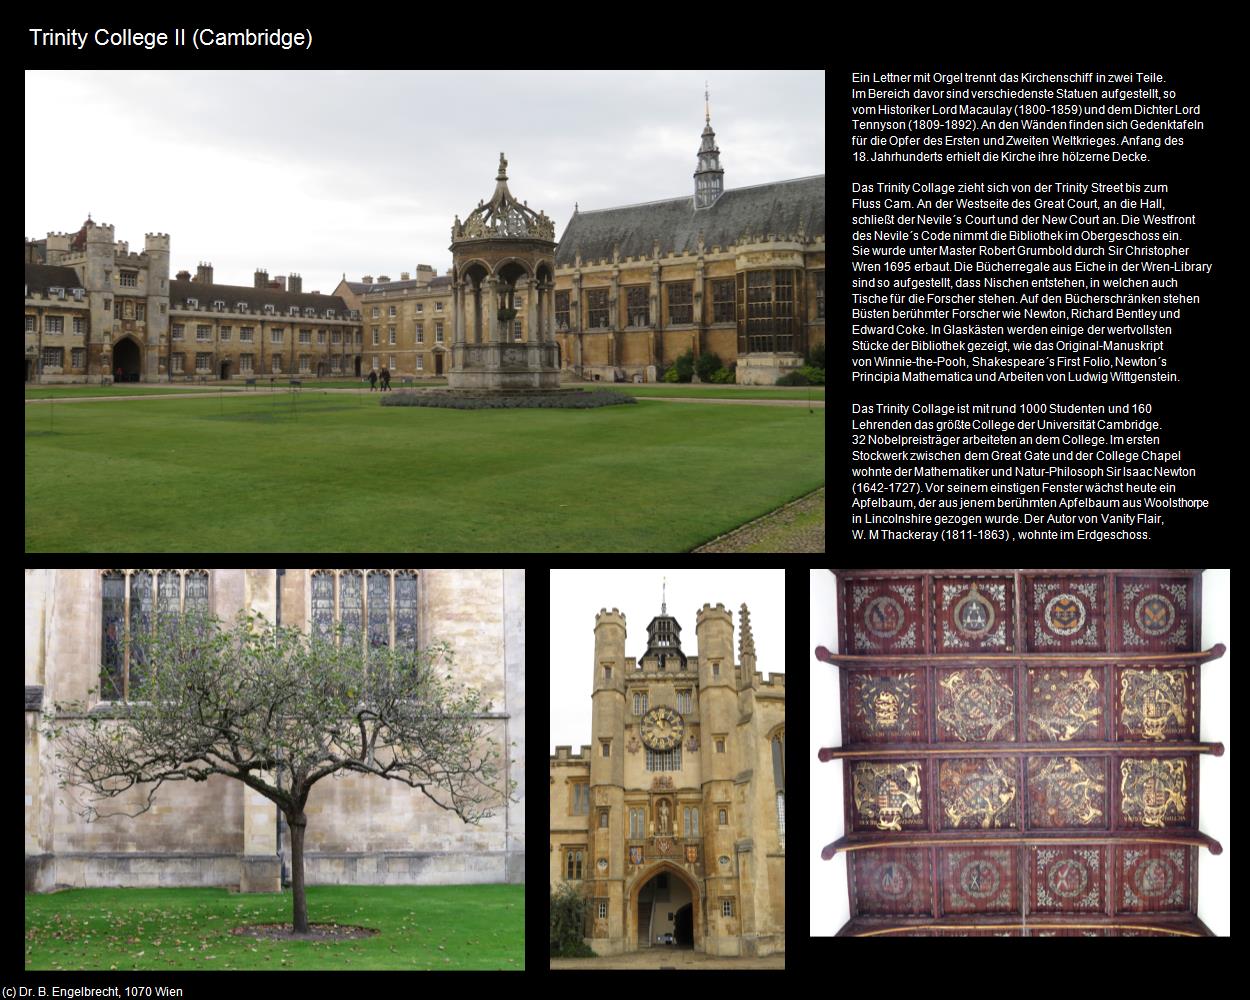 Trinity College II (Cambridge, England) in Kulturatlas-ENGLAND und WALES